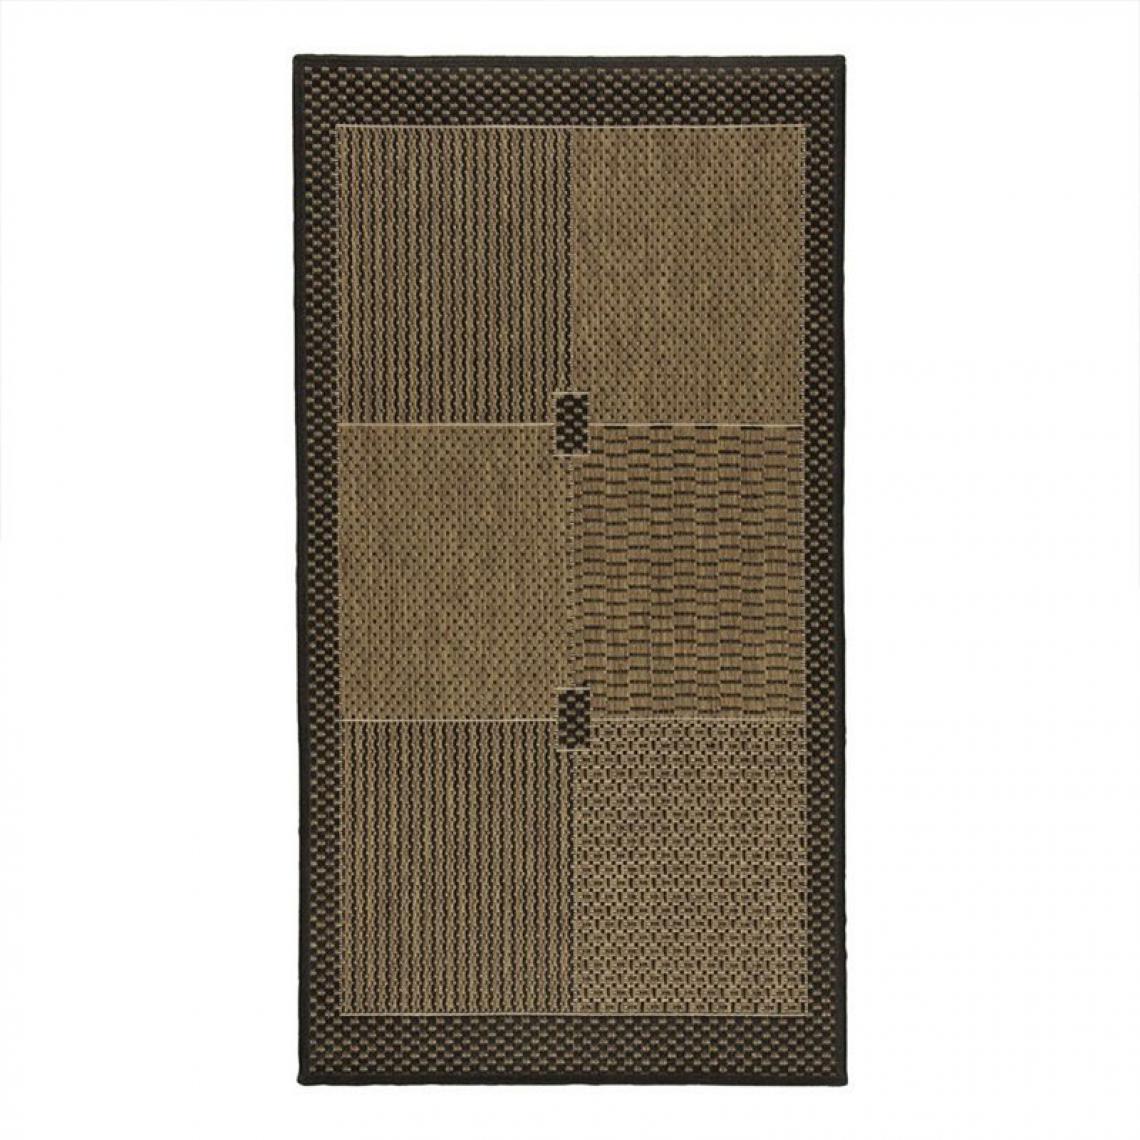 Thedecofactory - SUVA - Tapis tissé cadre, carrés et rayures noir et marron 133x190 - Tapis